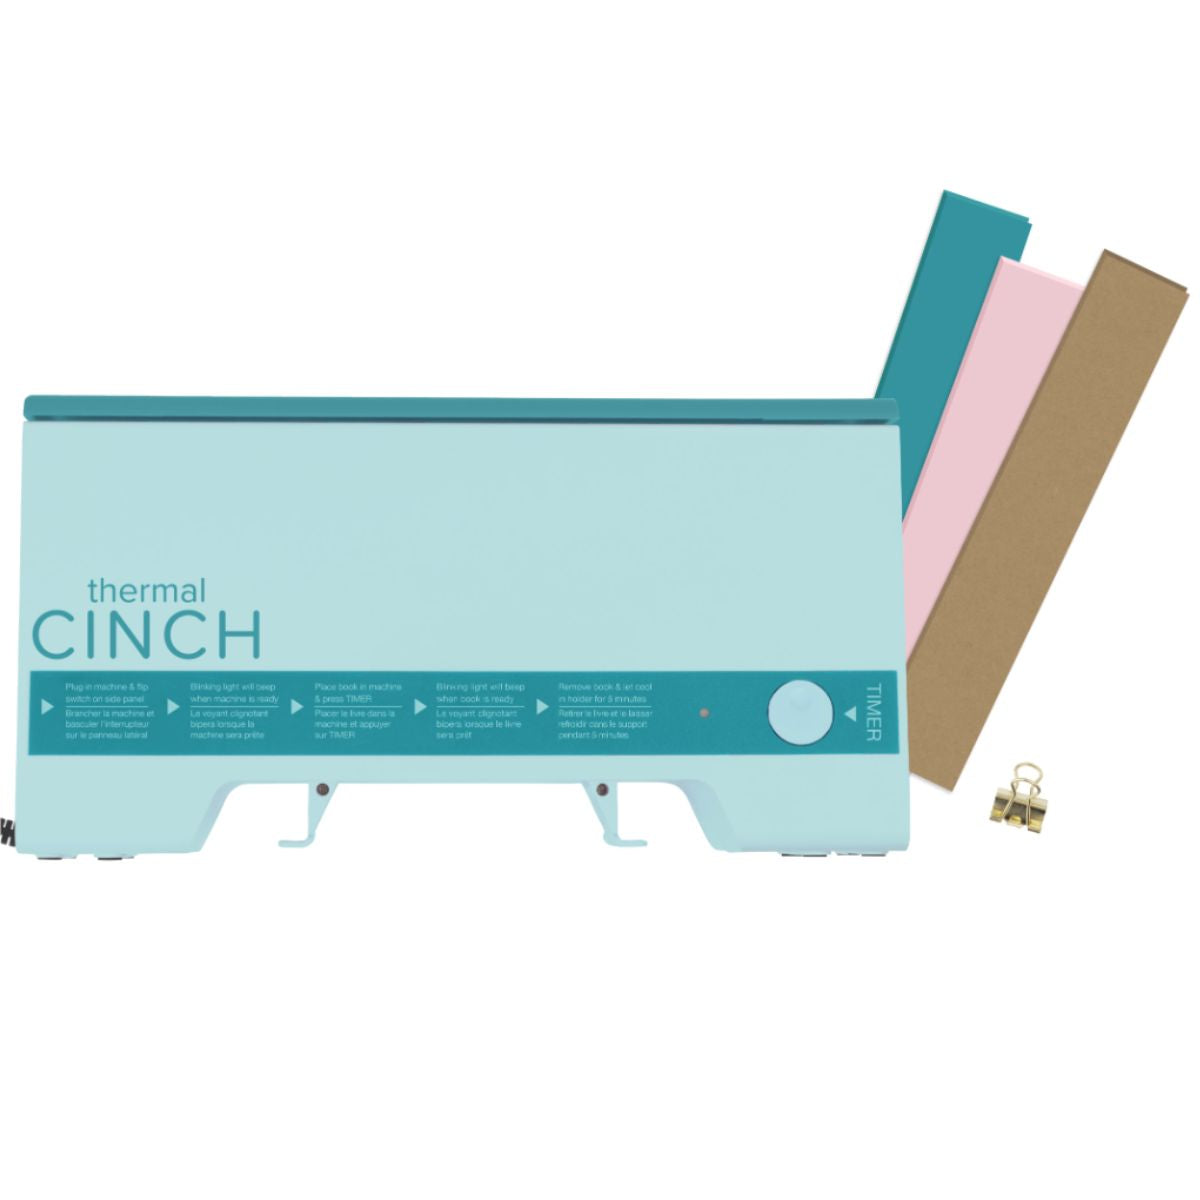 Thermal Cinch Mint Binding Machine / Máquina de Encuadernación Térmica Color Menta